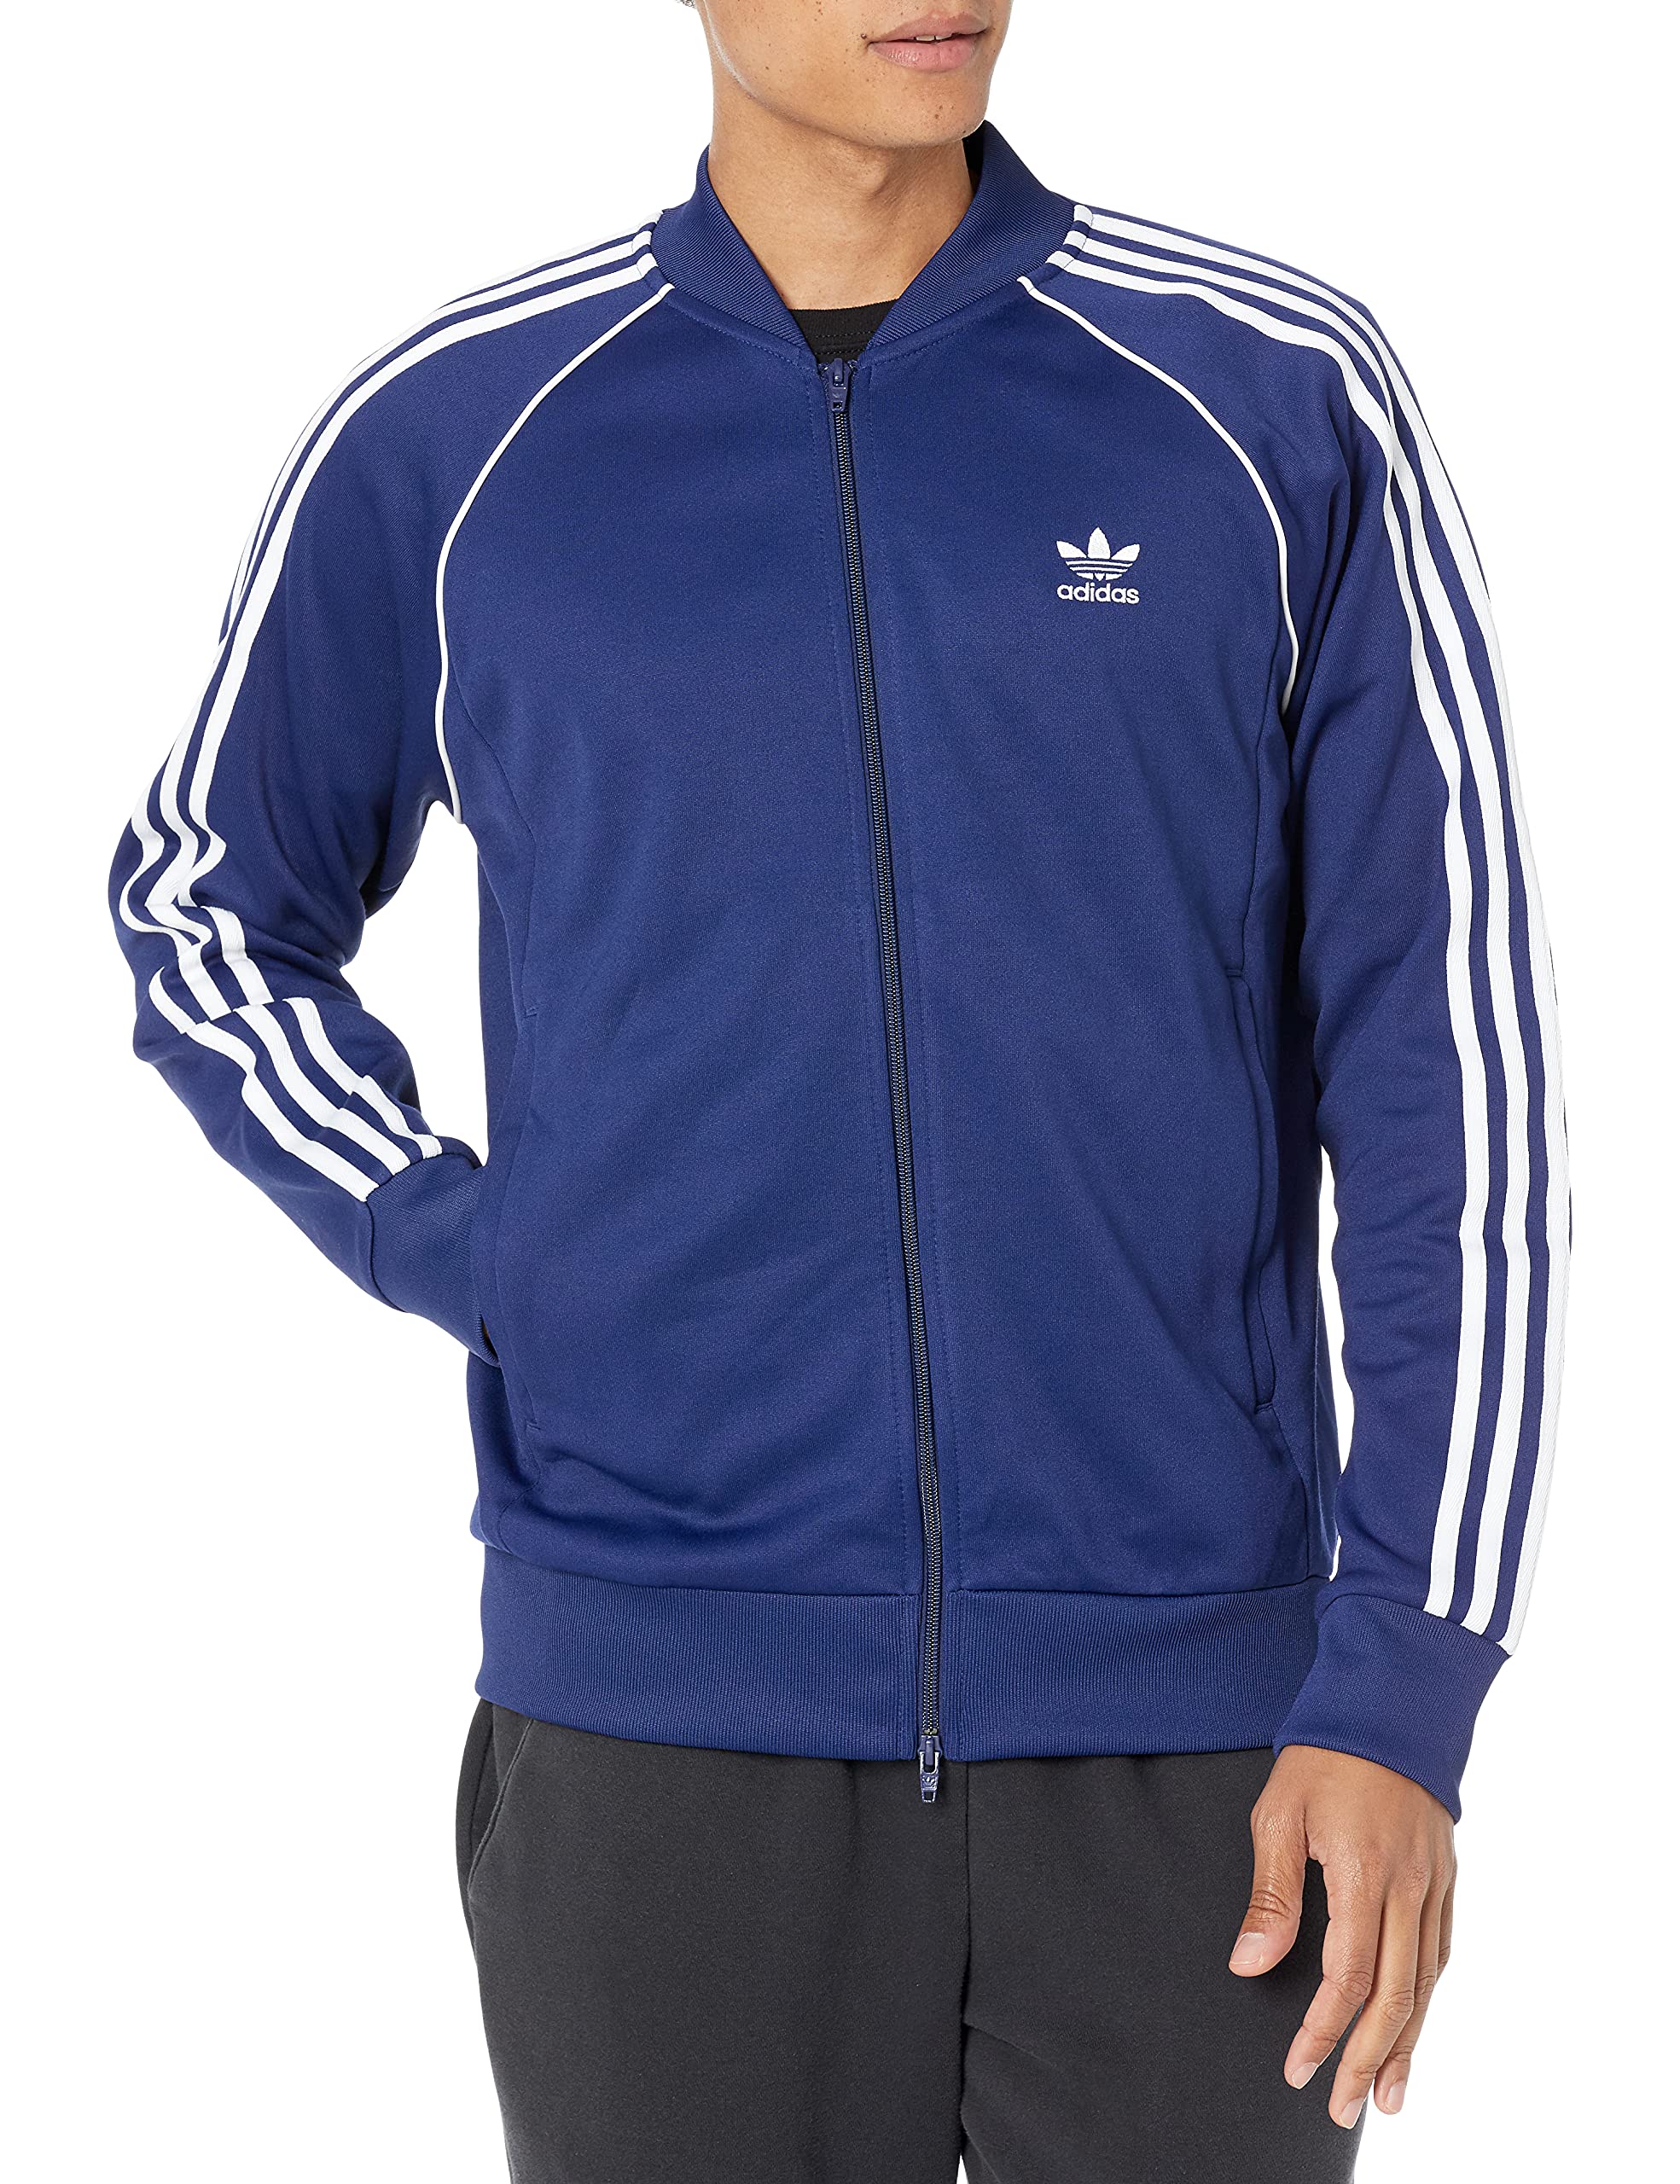 Adidas Originals Men's Adicolor Classics Primeblue Superstar Track Jacket, Night Sky/White, Medium